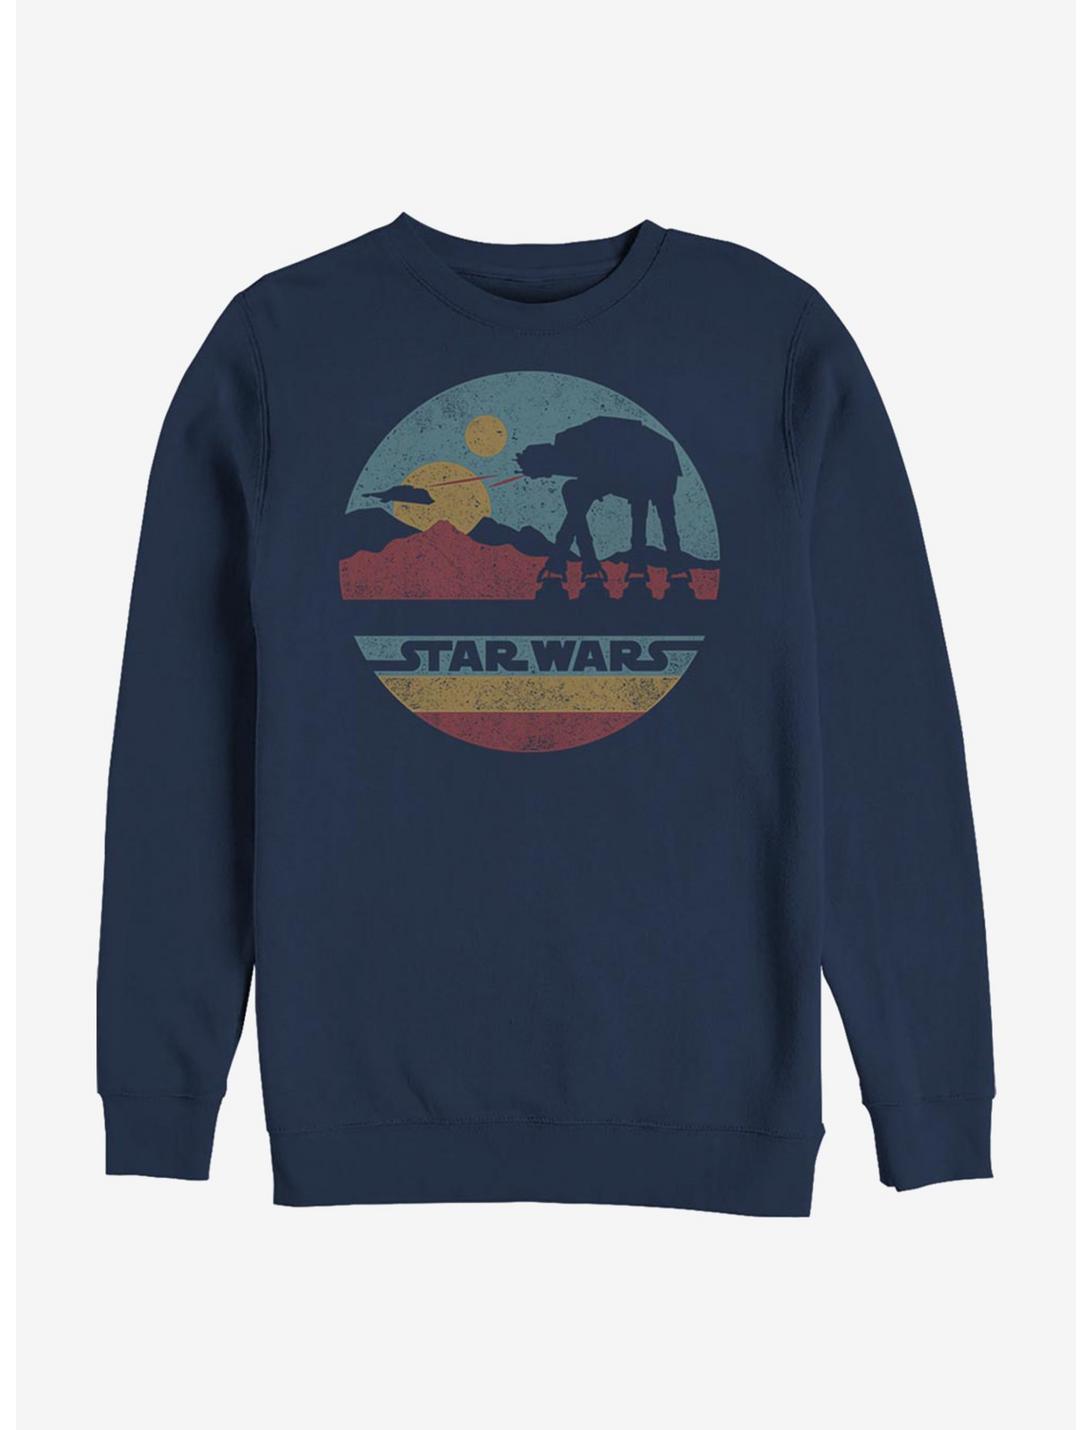 Star Wars AT-AT Mountain Sweatshirt, NAVY, hi-res